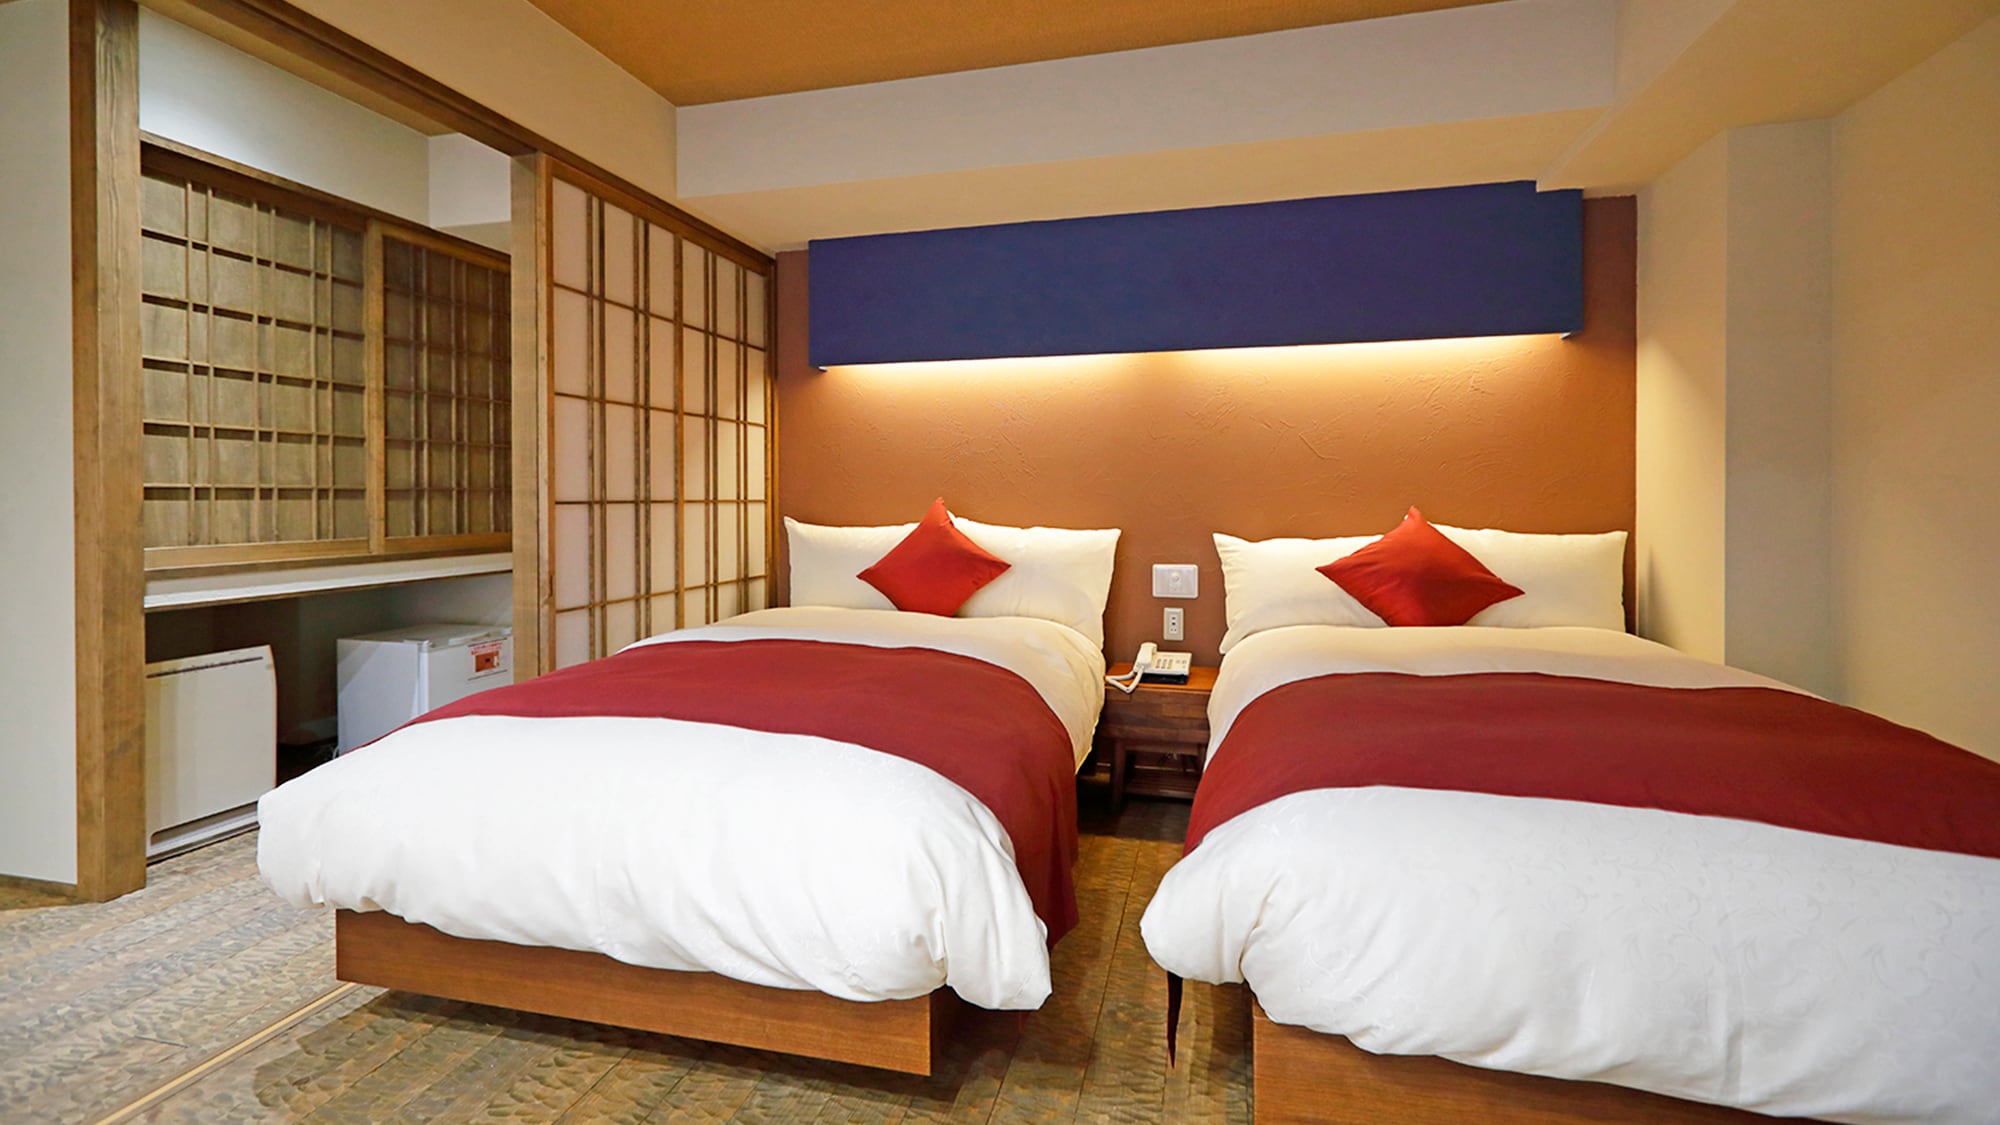 Kamar tamu dengan pemandian terbuka] gaya modern Jepang! Contoh kamar tamu dengan pemandian terbuka. Tipe kamar dengan kamar tidur empuk.